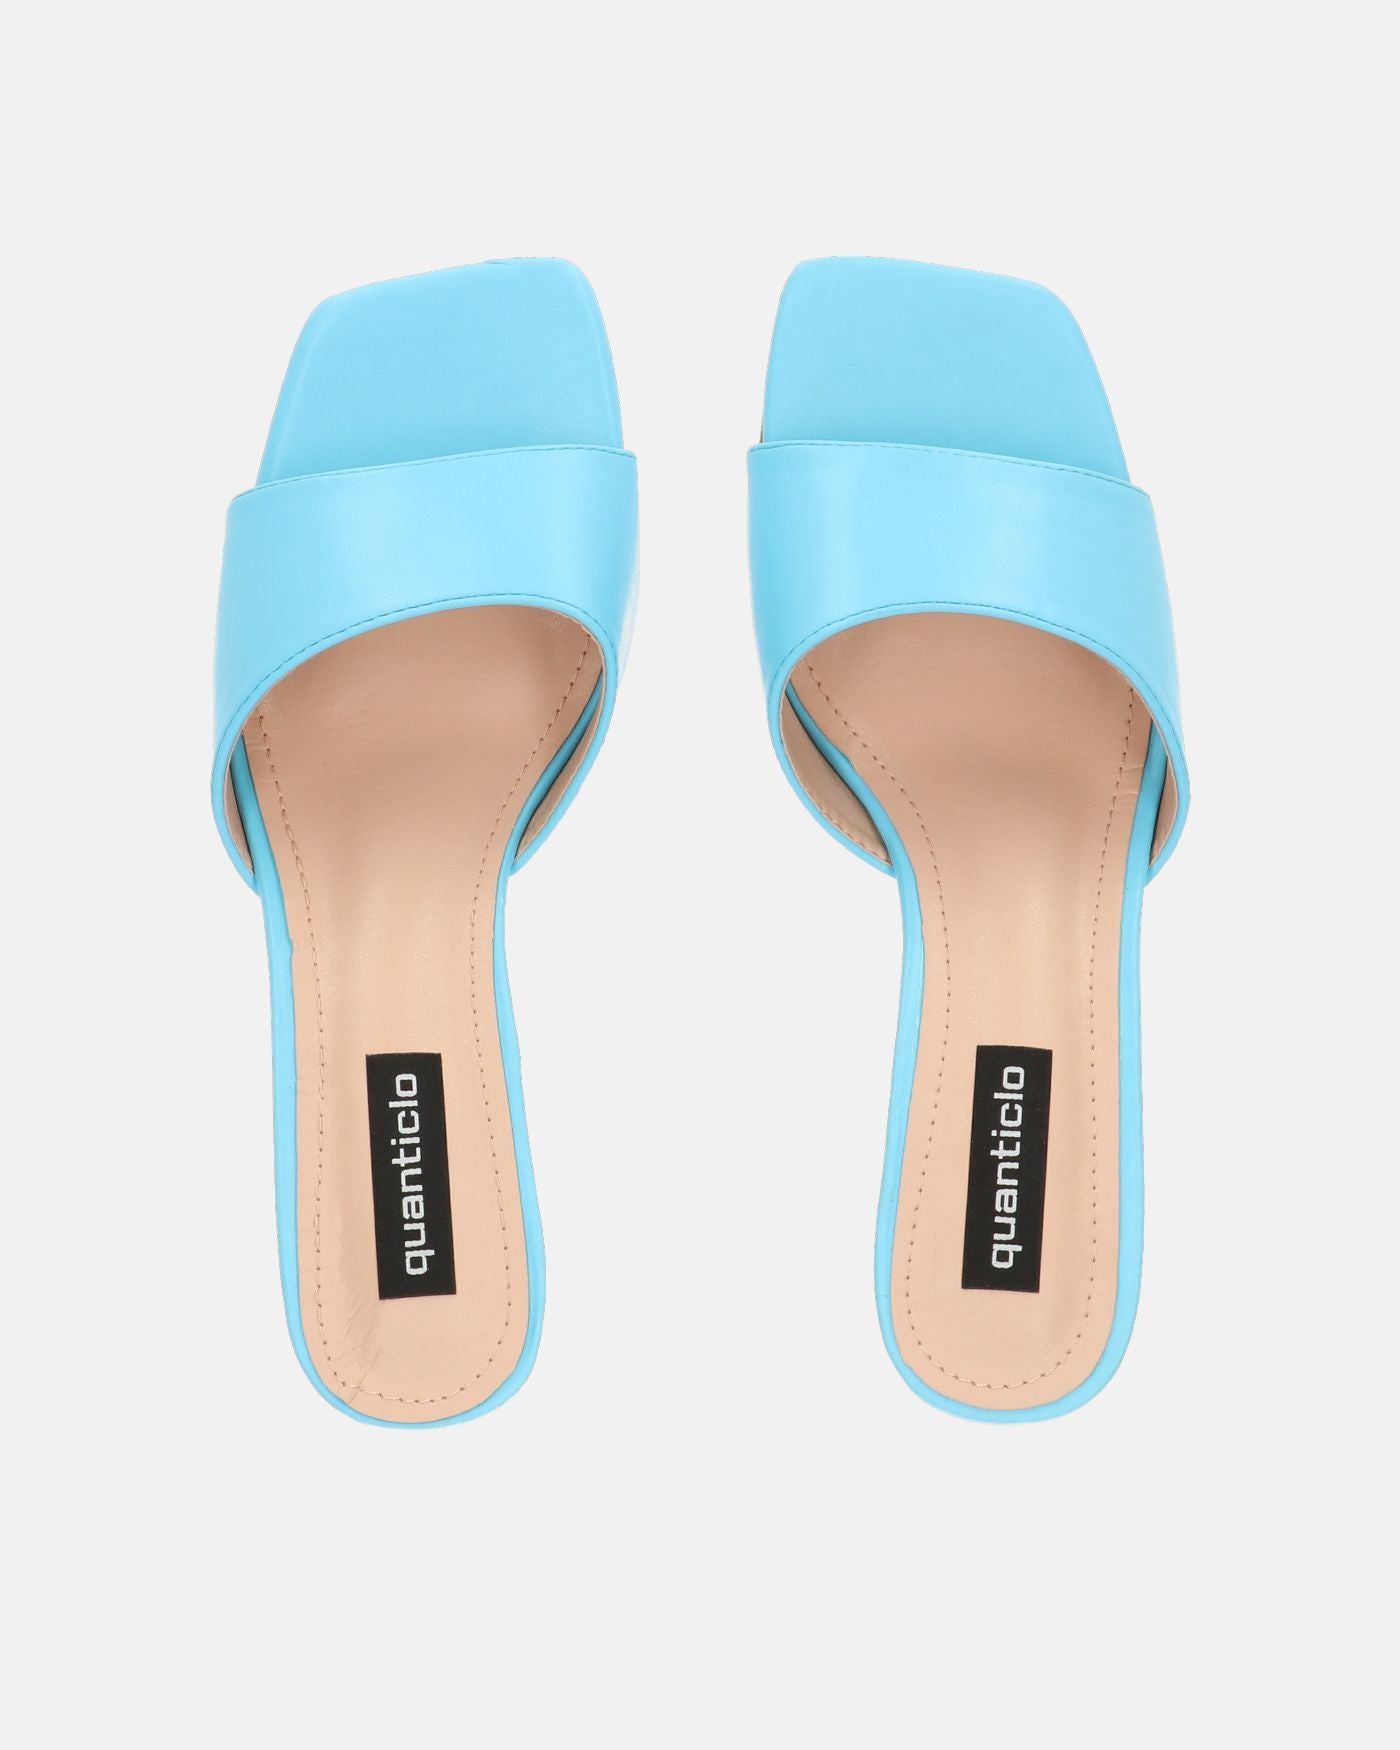 JUNIA - zapatos de tacón azules